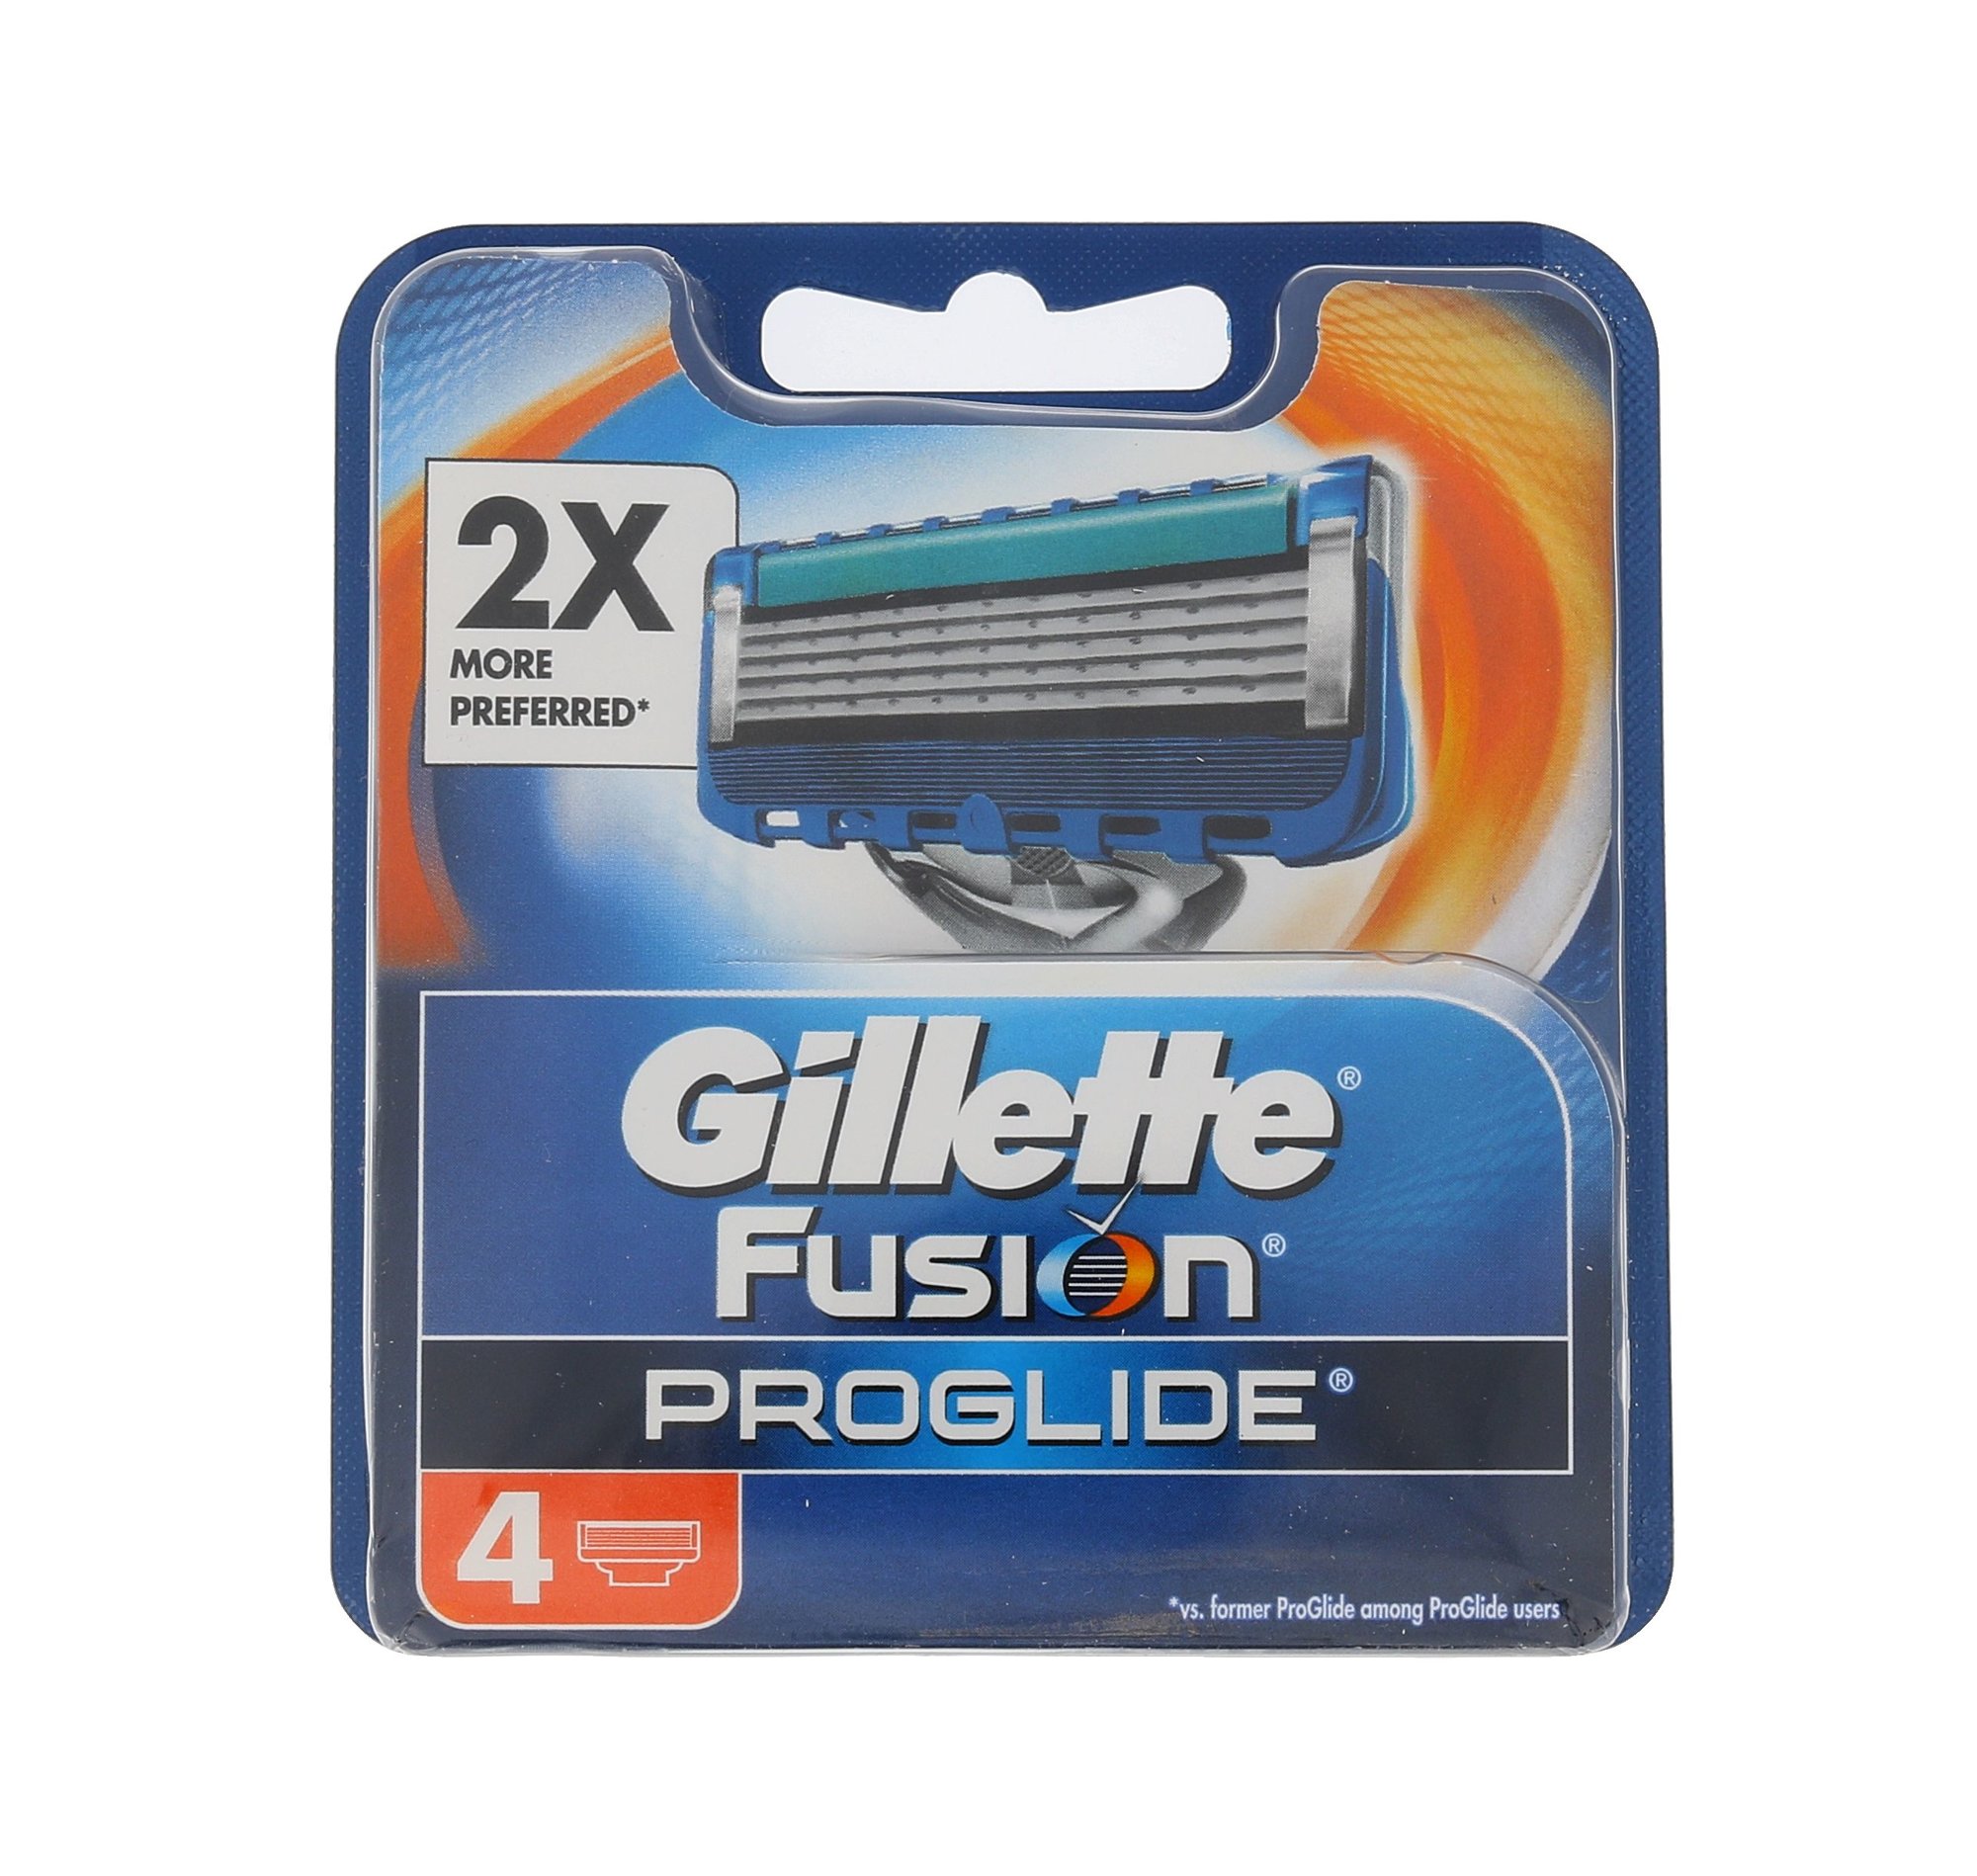 Gillette Fusion Proglide skustuvo galvutė